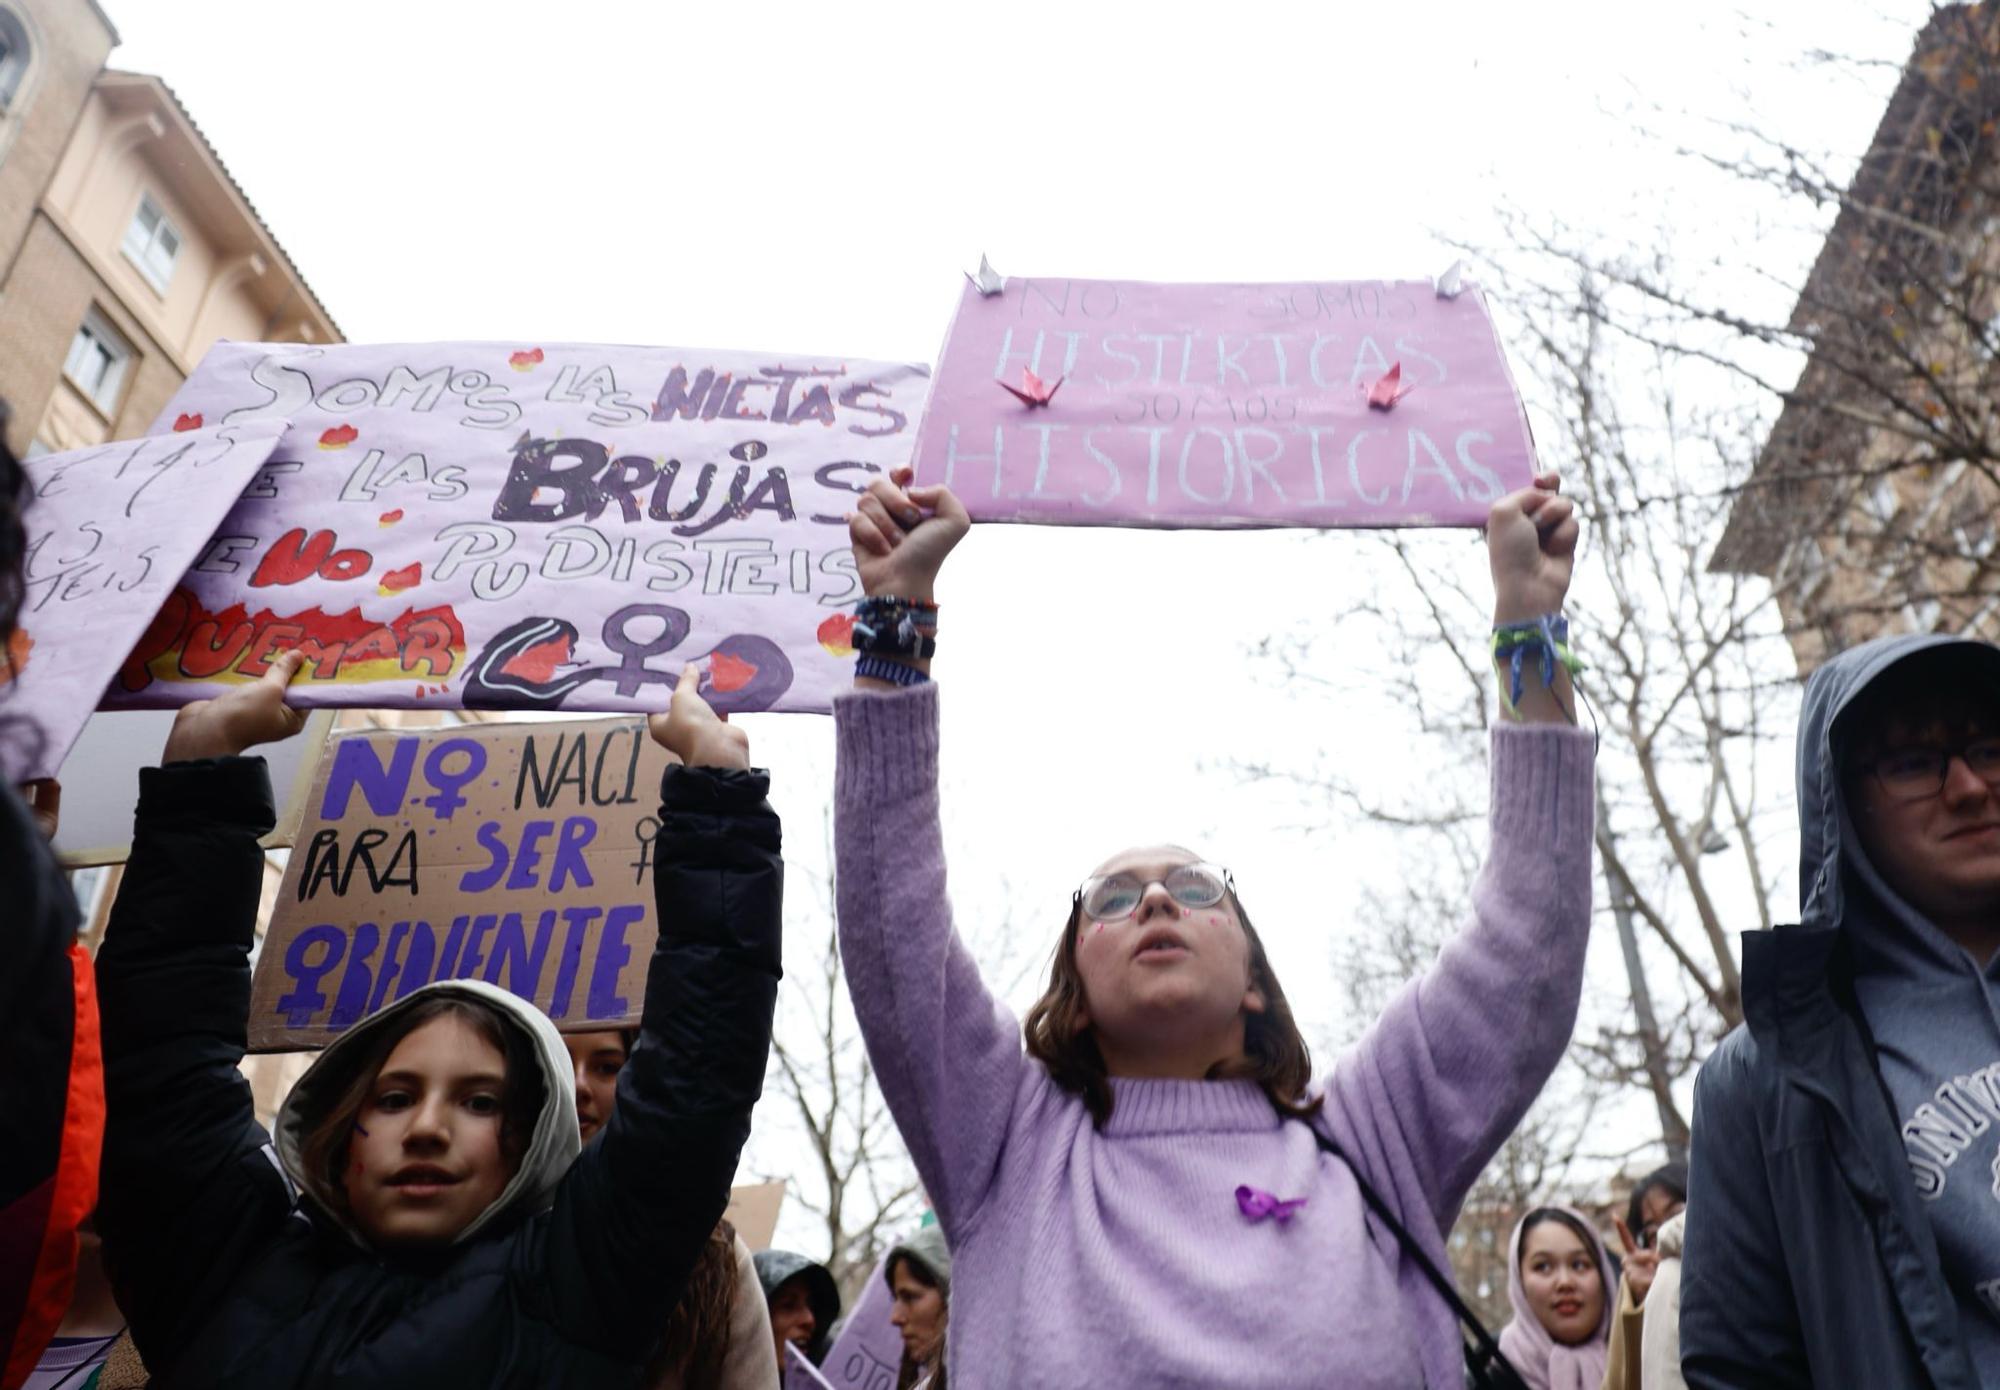 Manifestación estudiantil por el 8M en Zaragoza